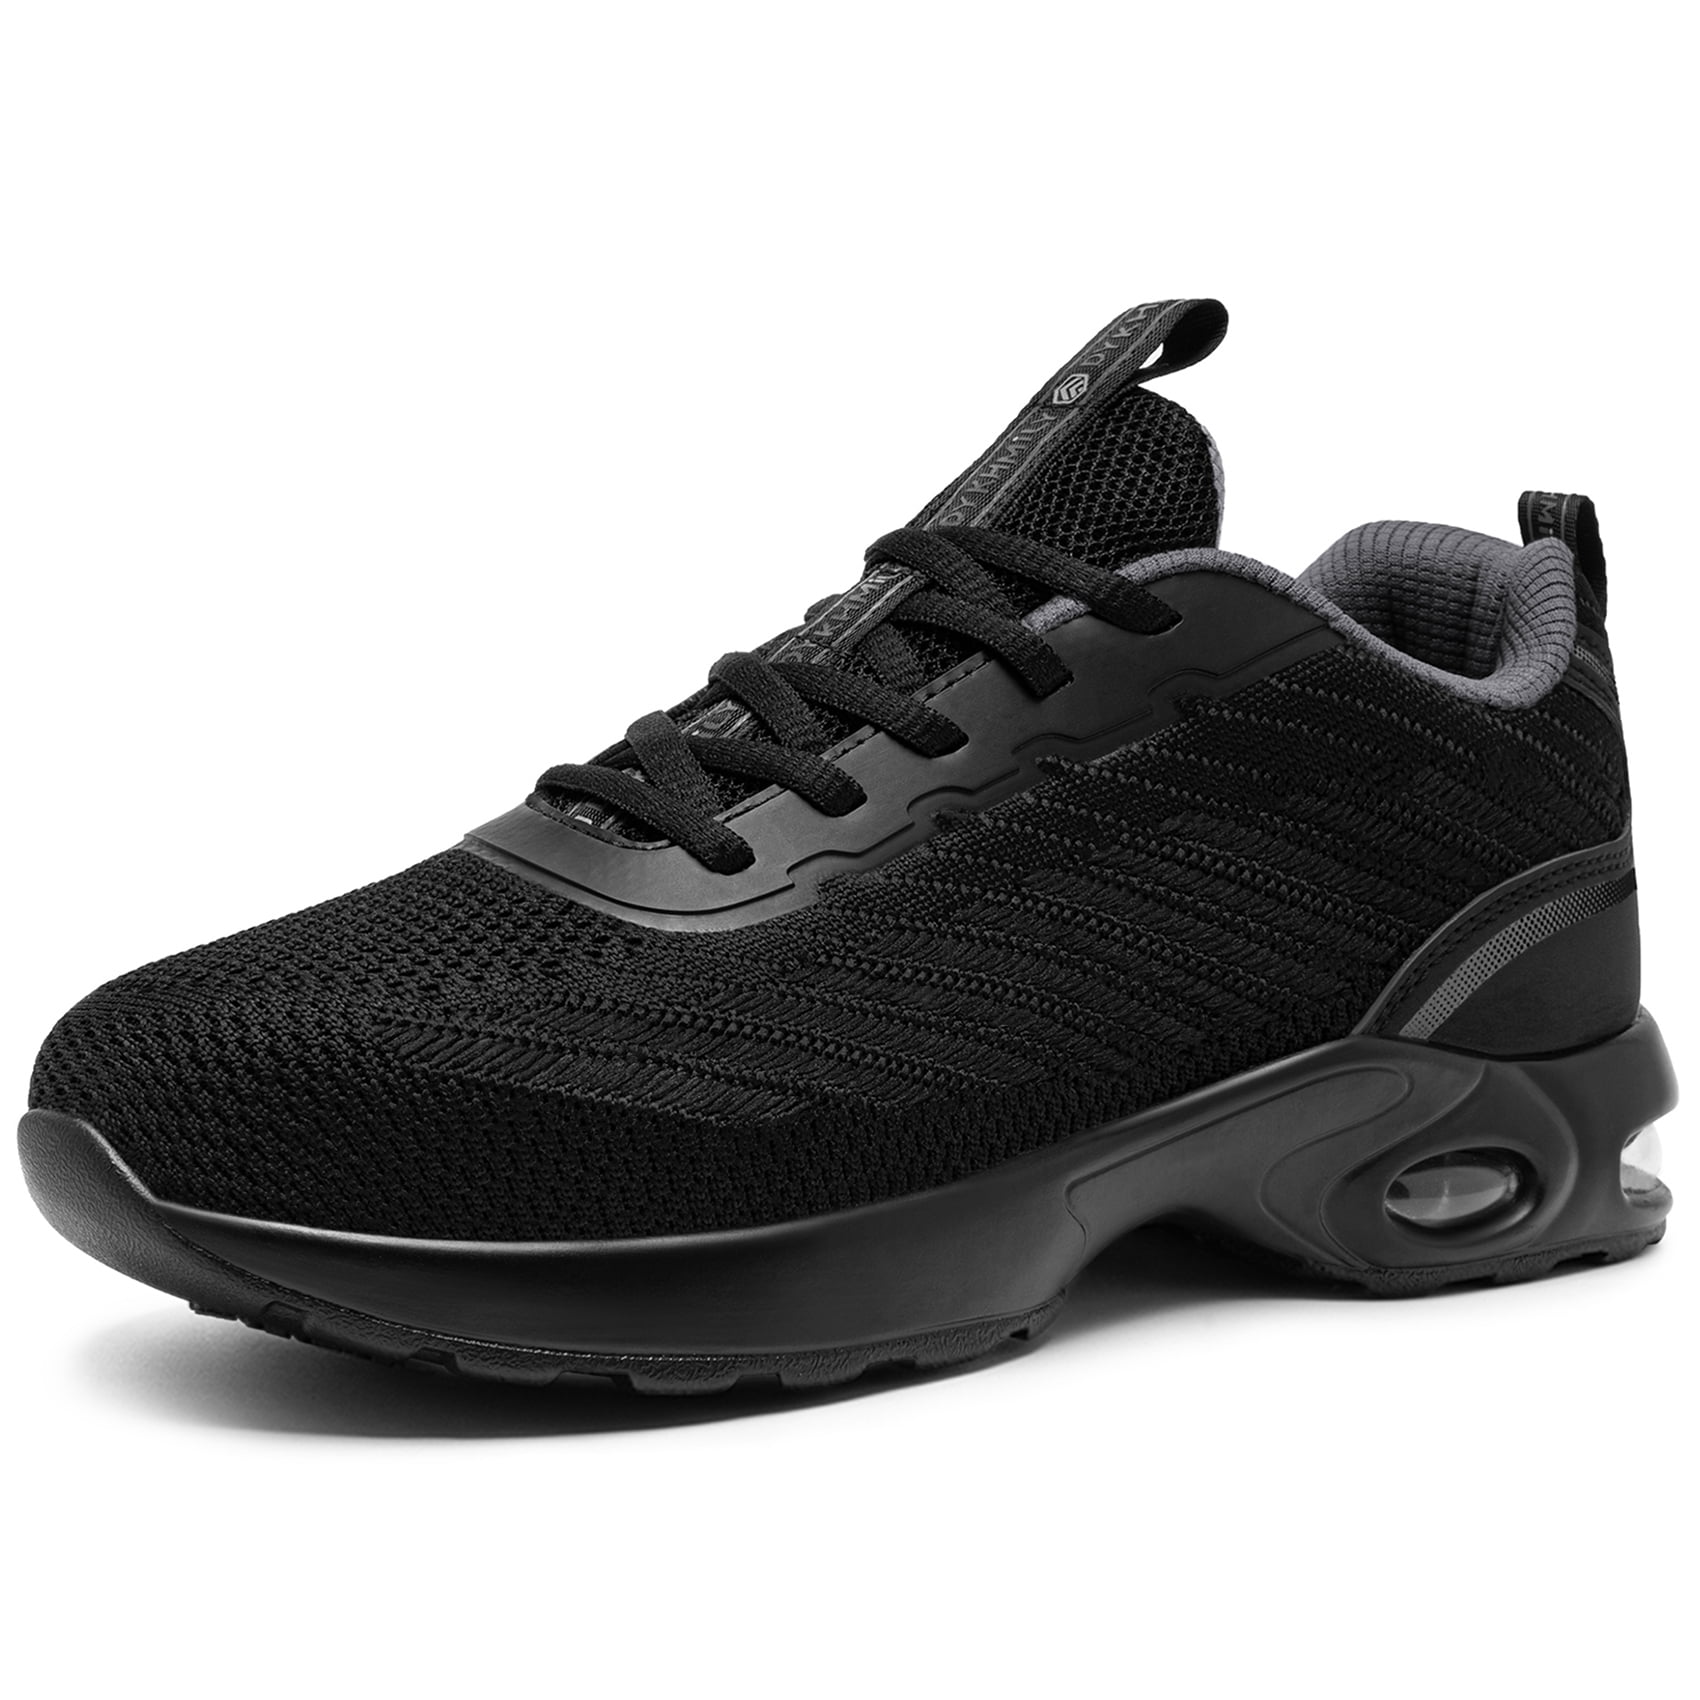 DKMILYAIR Steel Toe Shoes for Men Air Cushion Slip Resistant Steel Toe ...